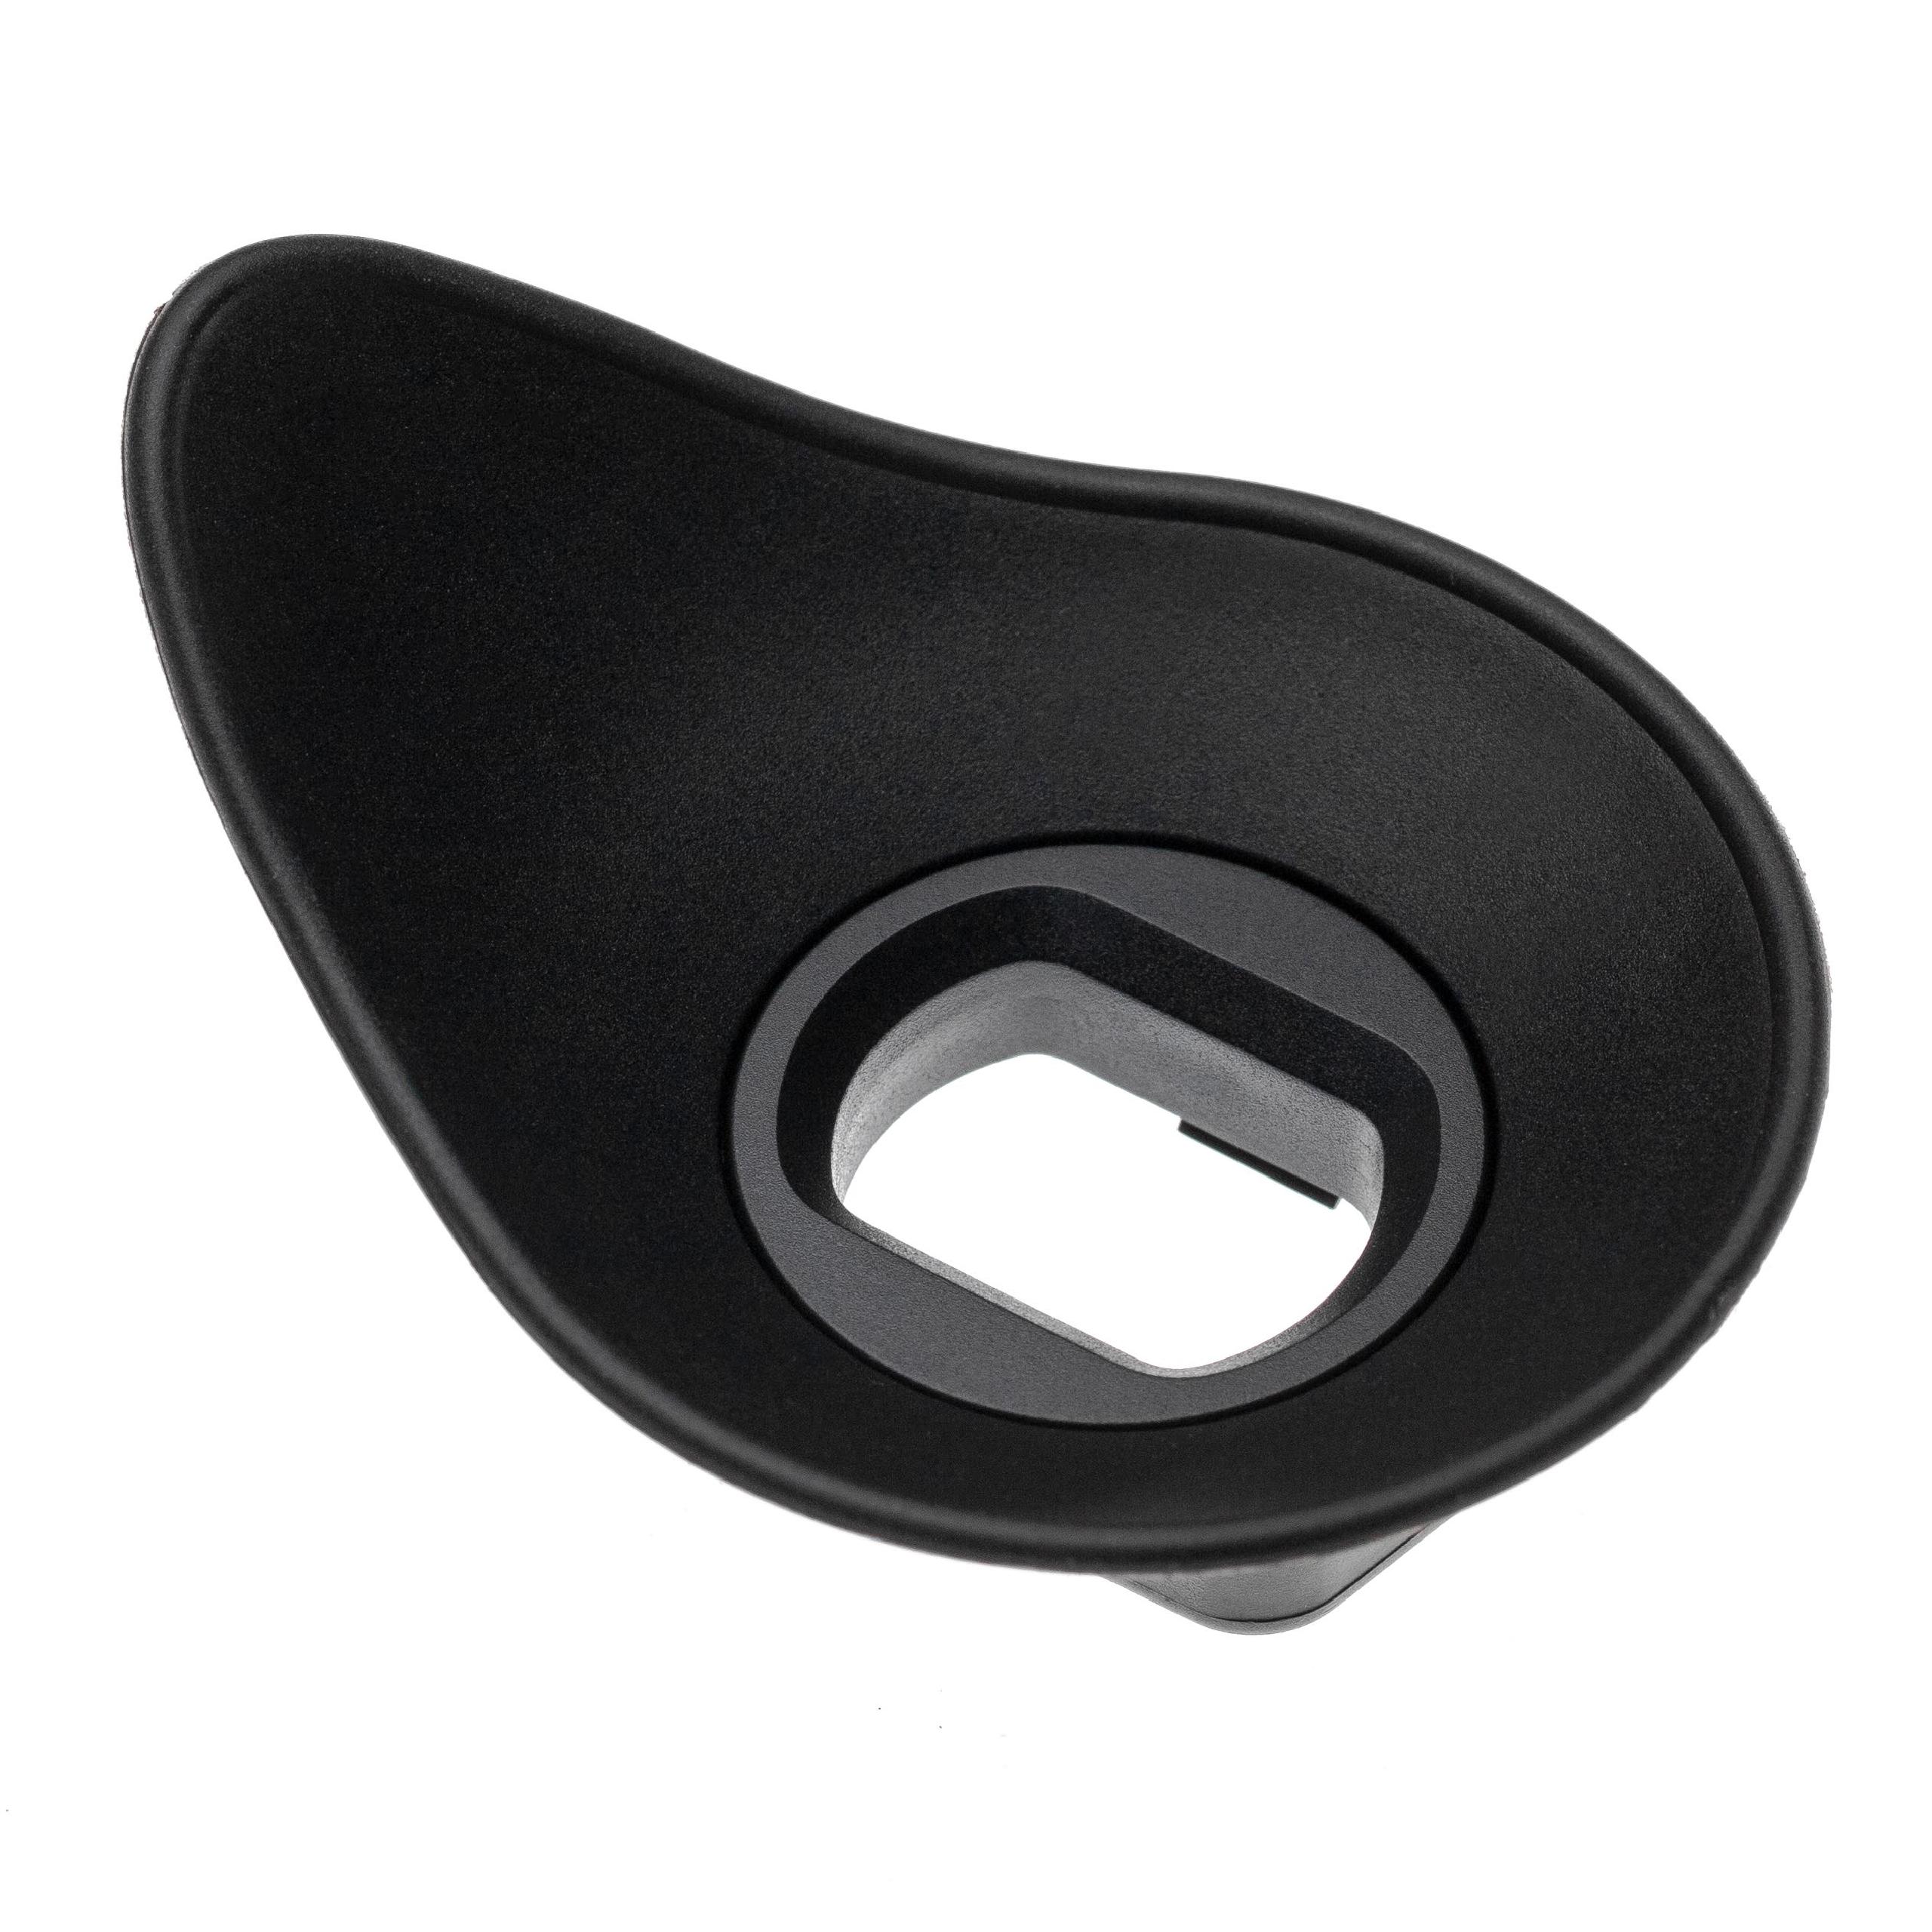 Augenmuschel Sucher als Ersatz für Sony FDA-EP10 für Sony A6000 u.a., Kunststoff, Gummi